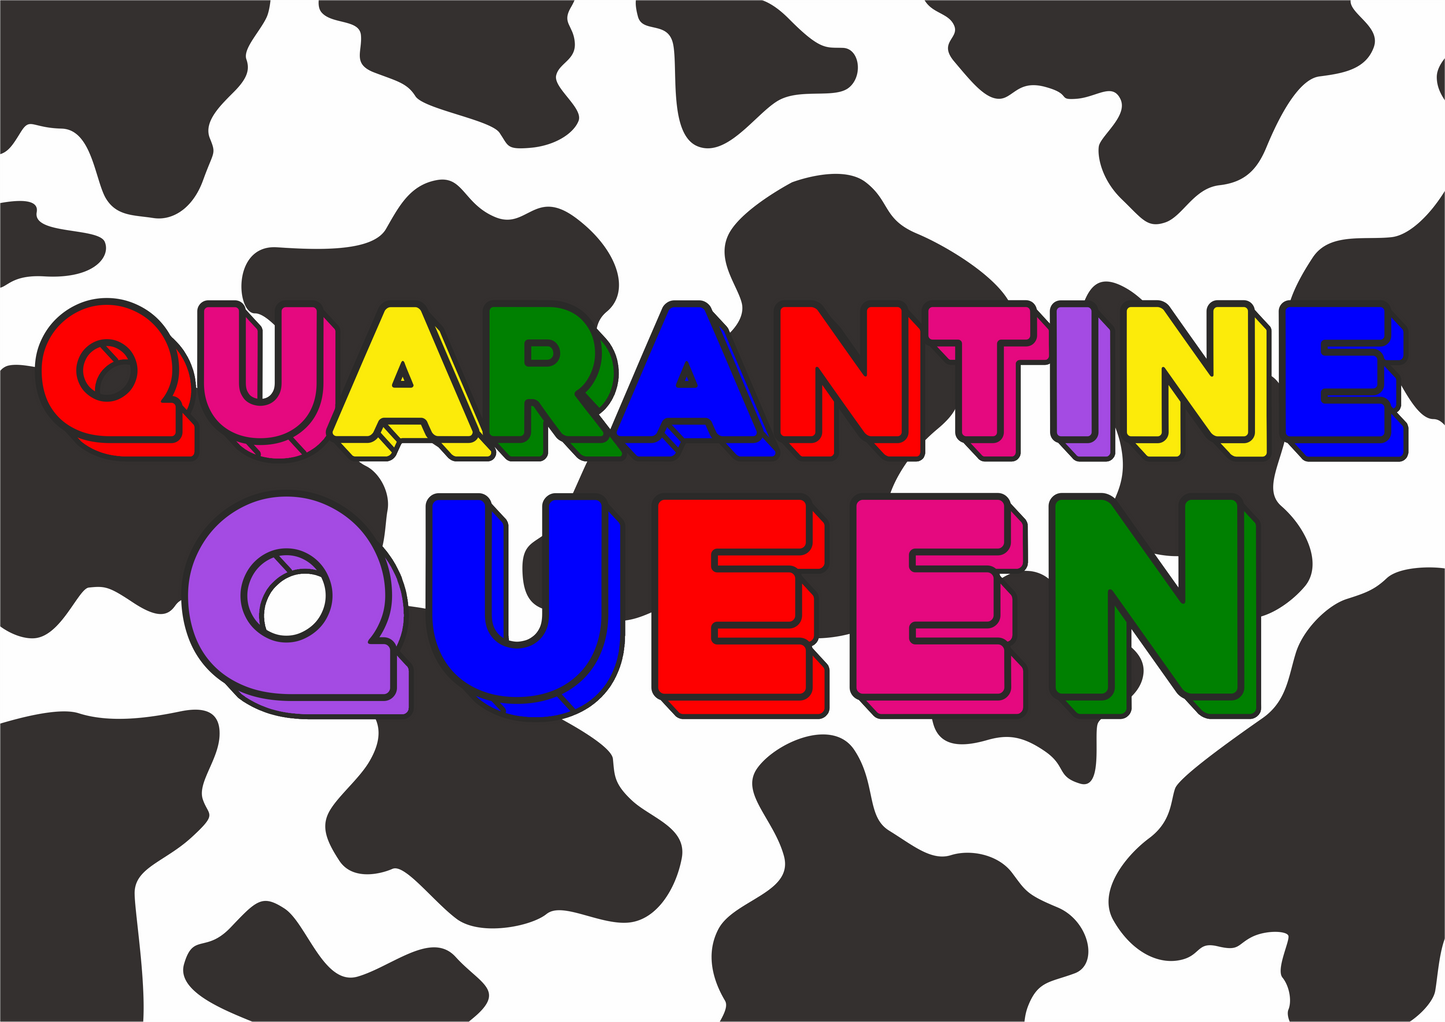 Quarantine Queen